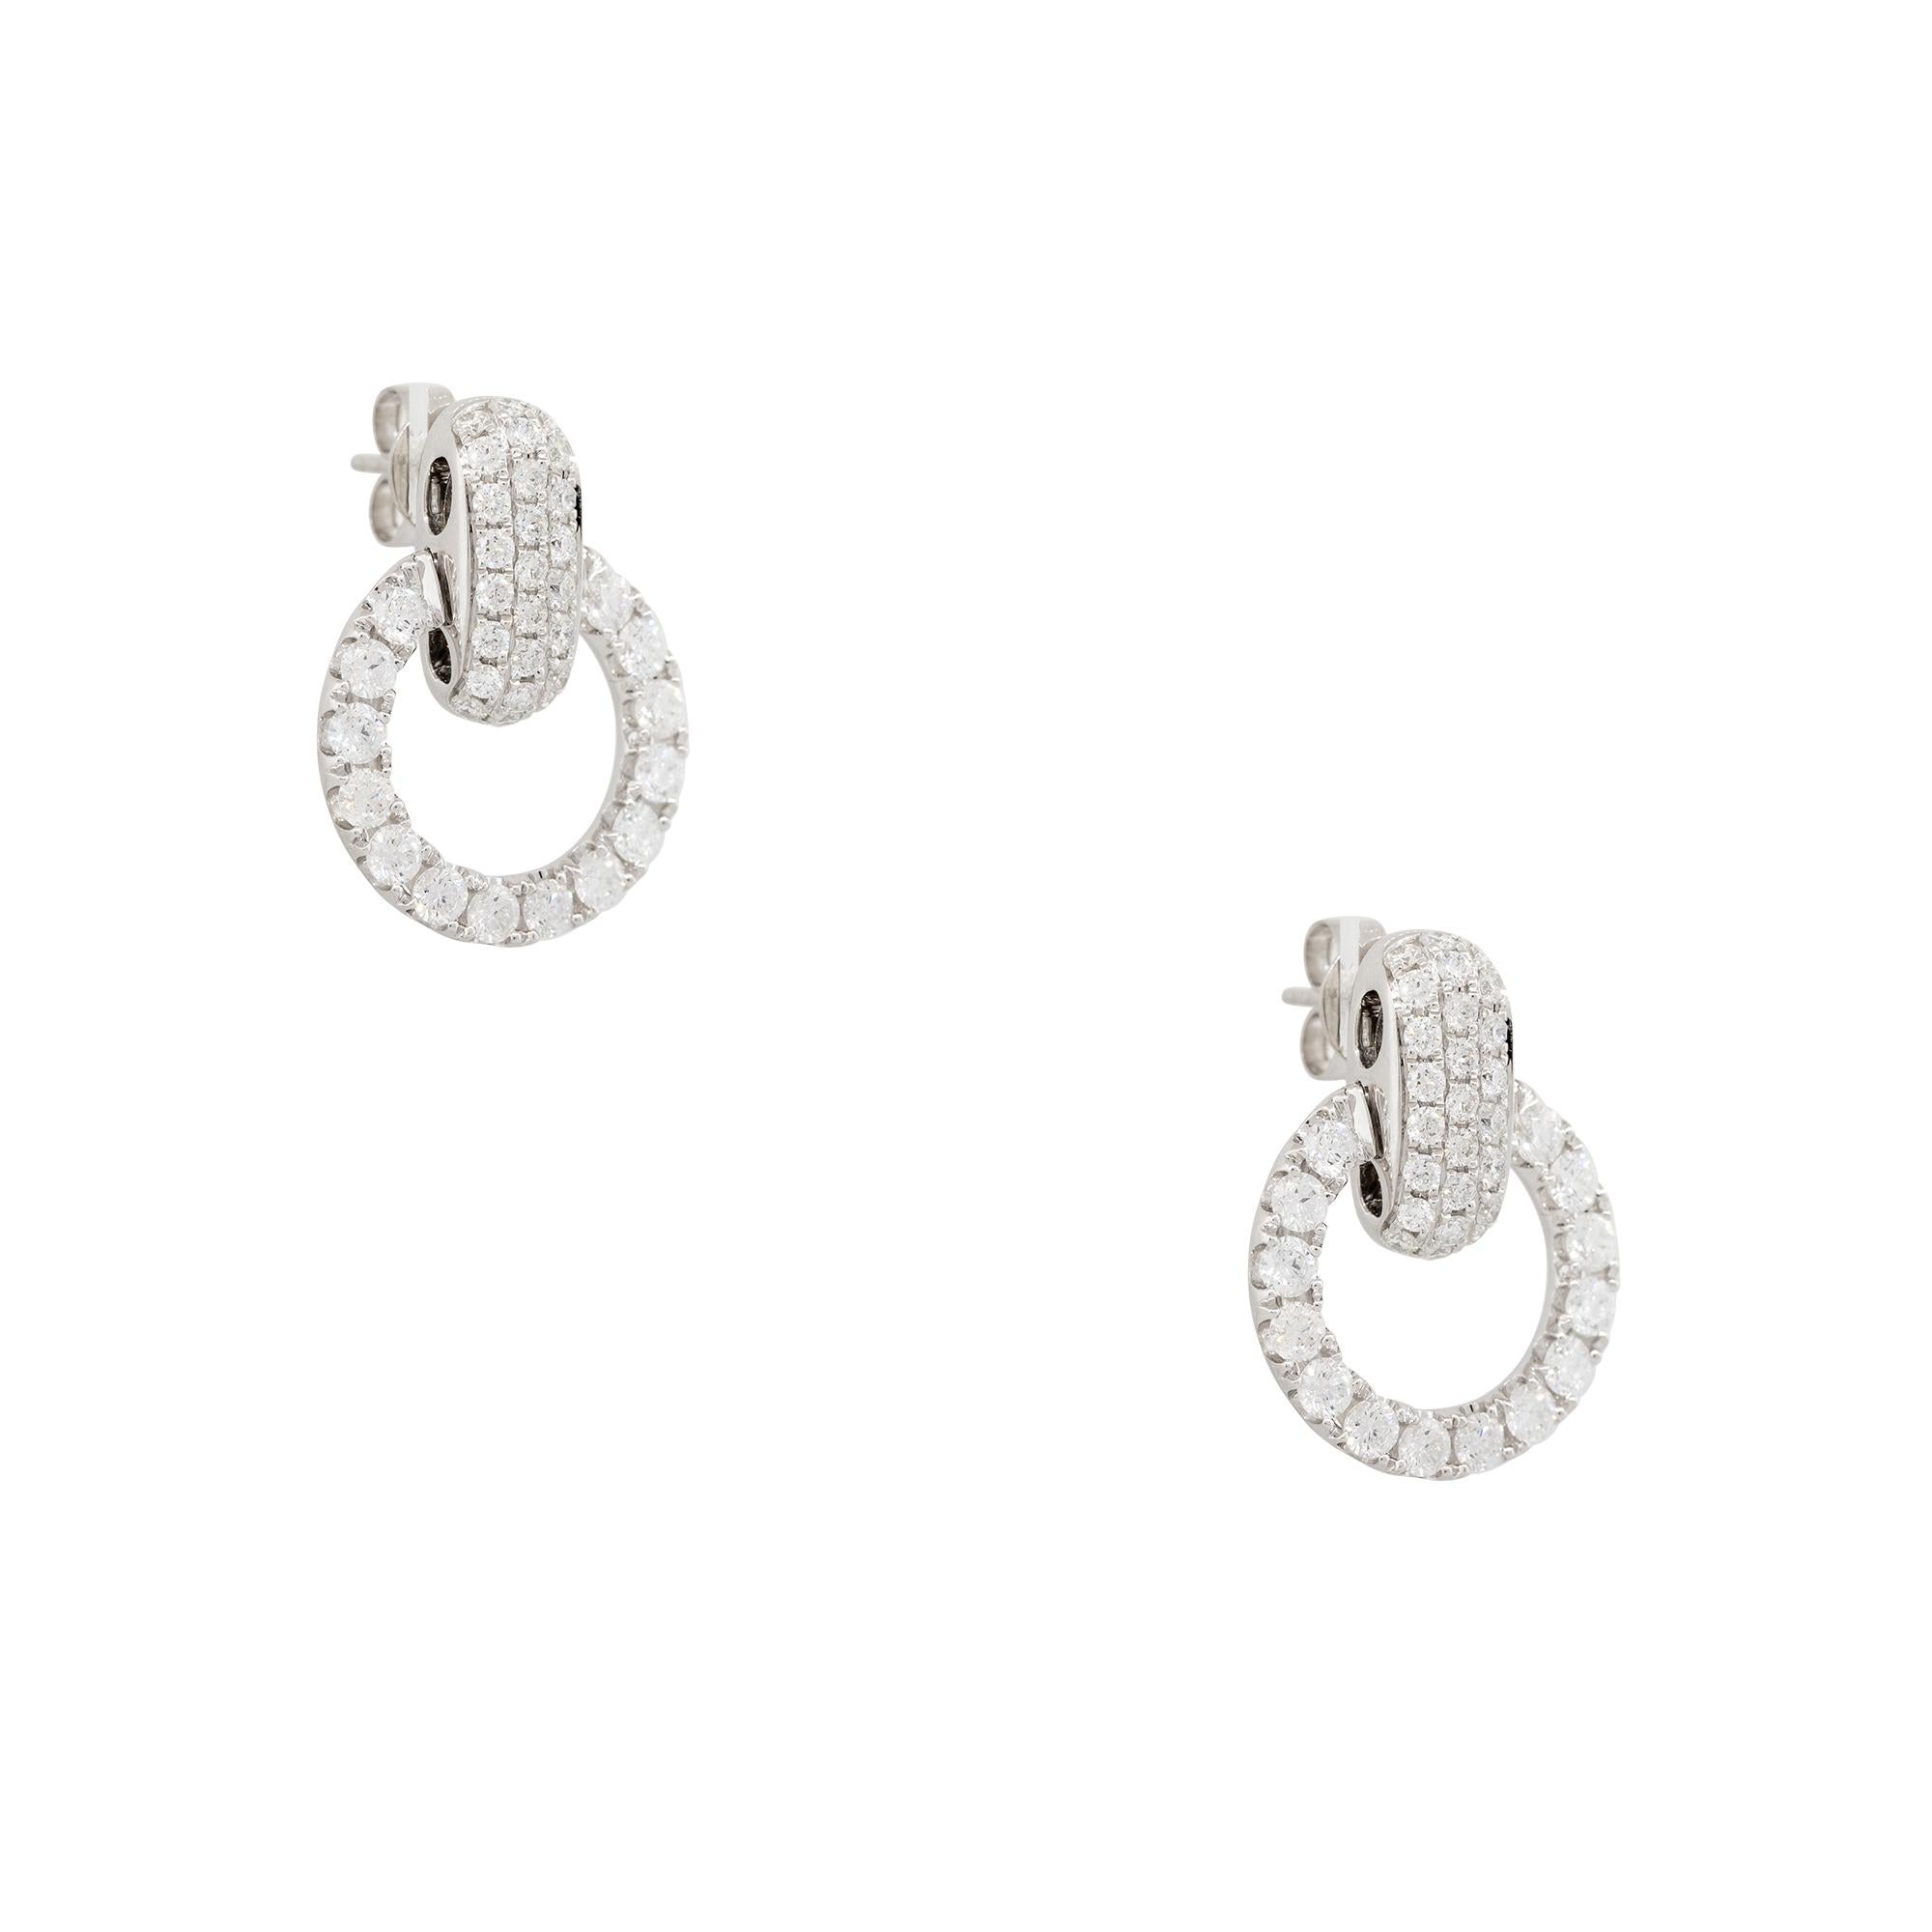 Boucles d'oreilles pendantes en or blanc 18k avec 2.38ctw Pave Diamond Circle
Produit : Boucles d'oreilles en diamant pavé
MATERIAL : Or blanc 18k
Détails des diamants : Il y a environ 2,38 carats de diamants taillés en brillant rond (78